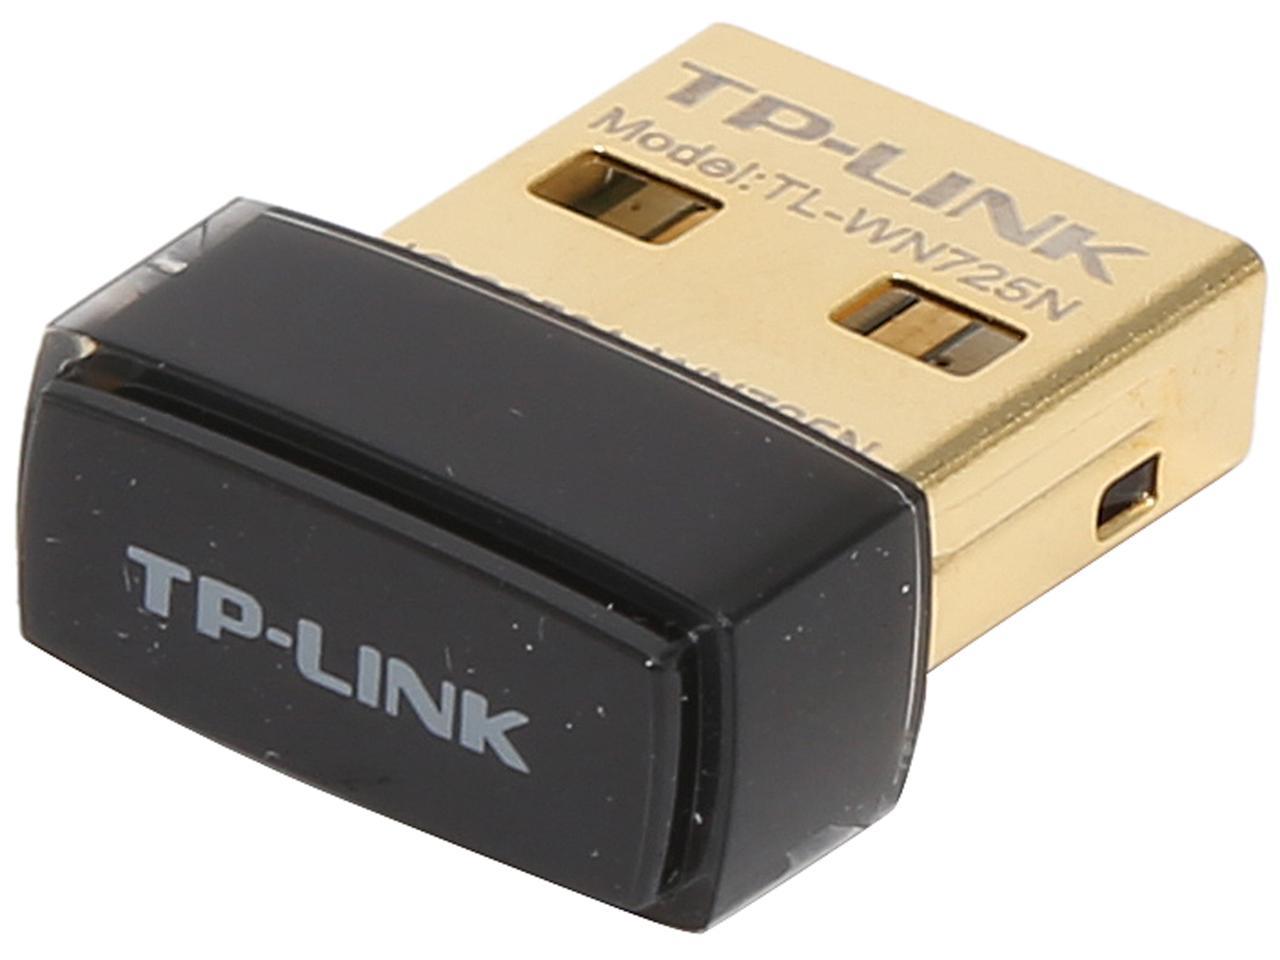 TP-LINK TL-WN725N Nano Wireless N150 Adapter, 150Mbps, IEEE 802.11b/g/n, WEP, WPA / WPA2, Plug & Play in Windows 10 (32 bit & 64 bit) - image 1 of 5